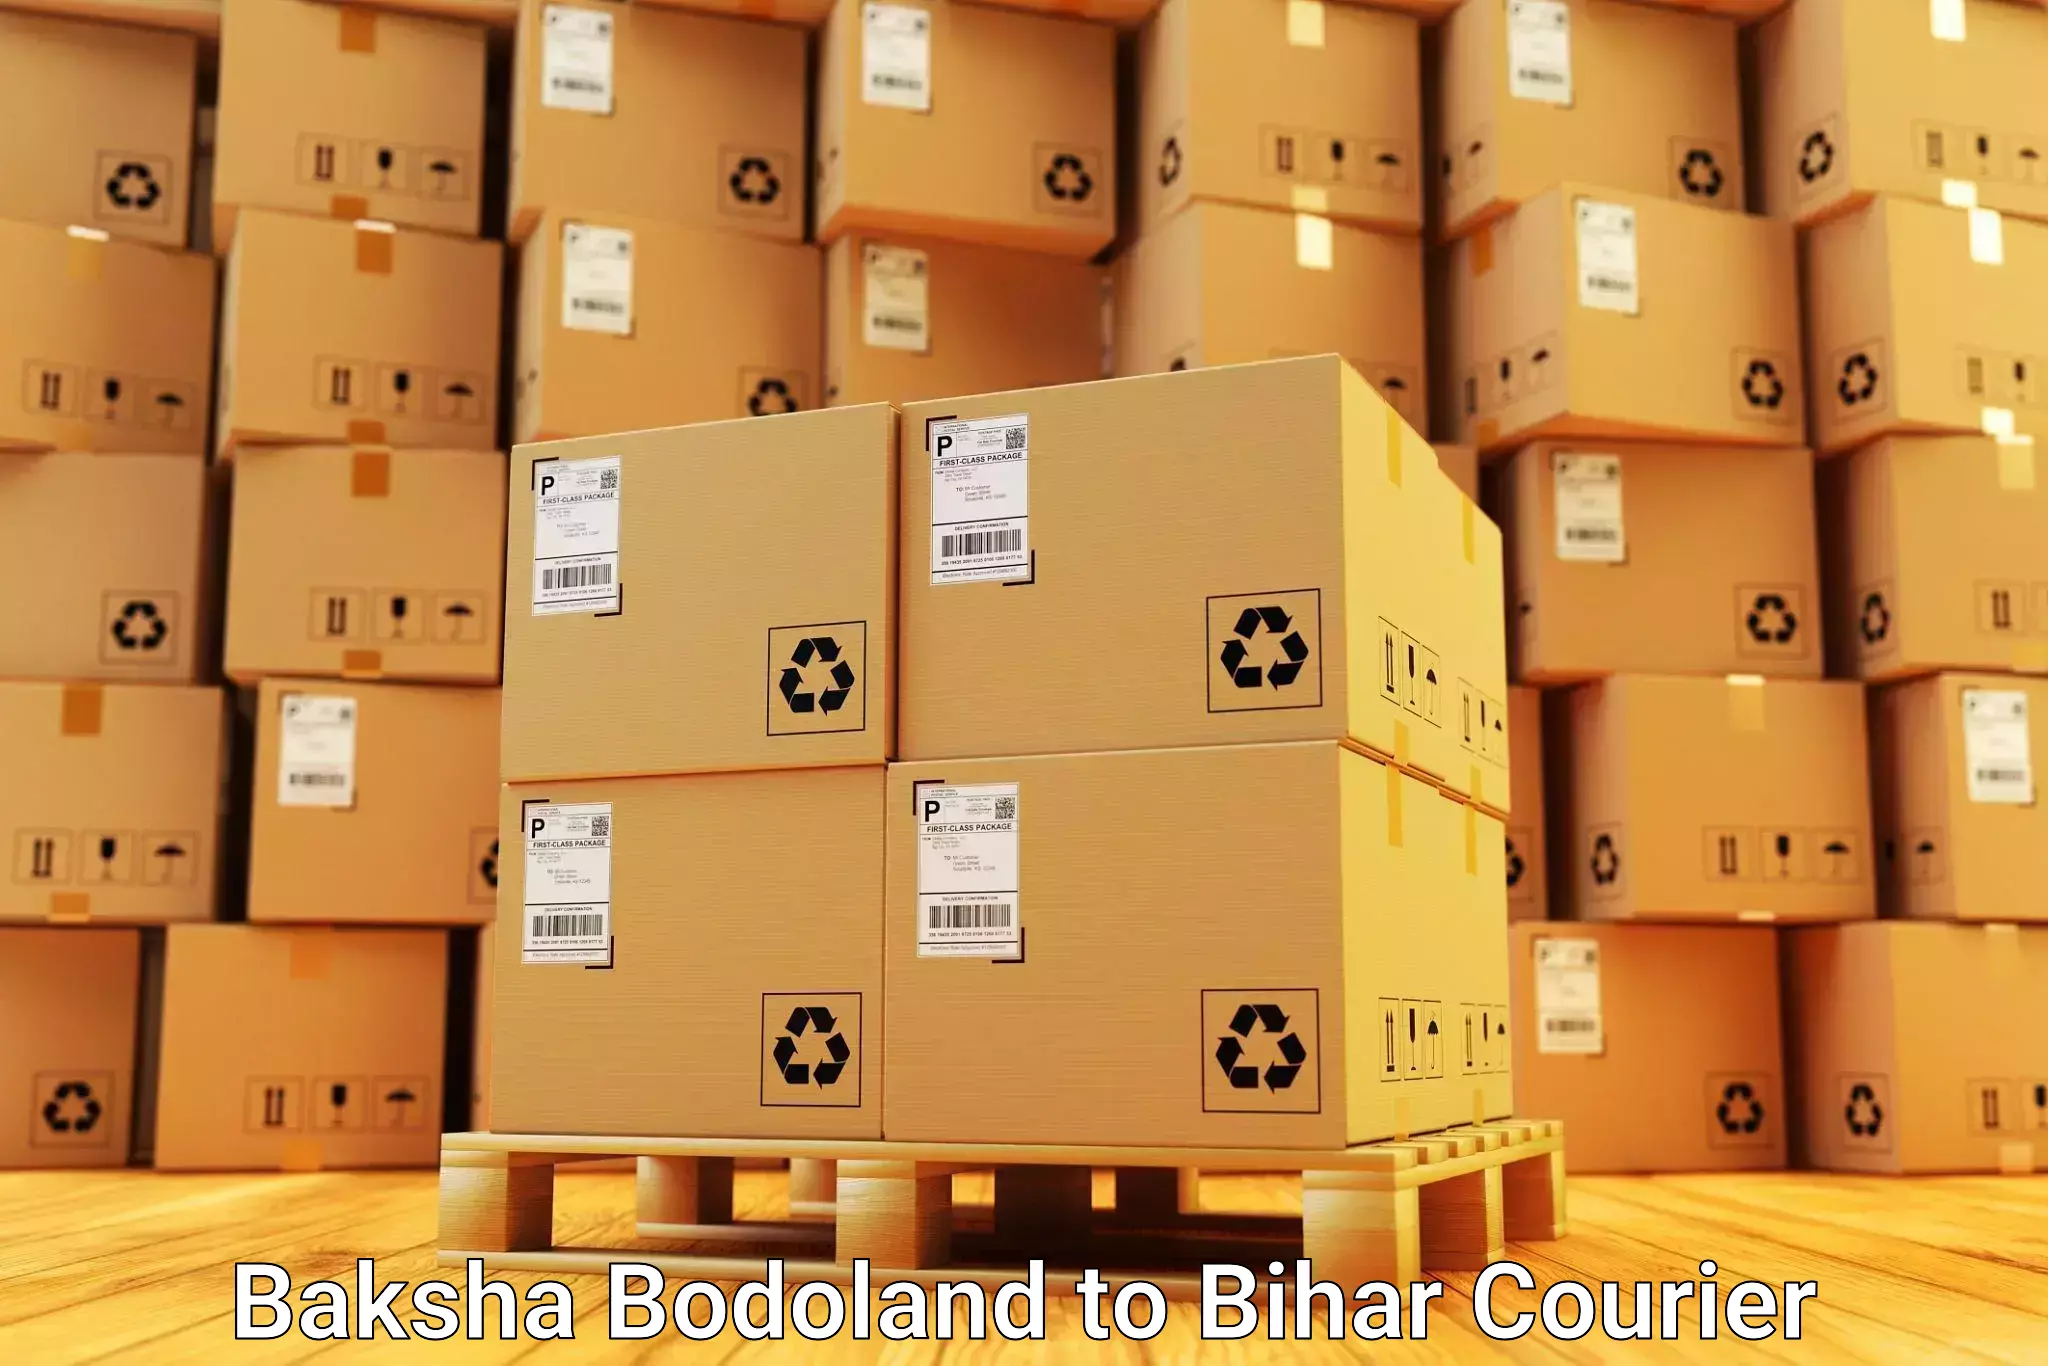 Furniture delivery service Baksha Bodoland to Bihar